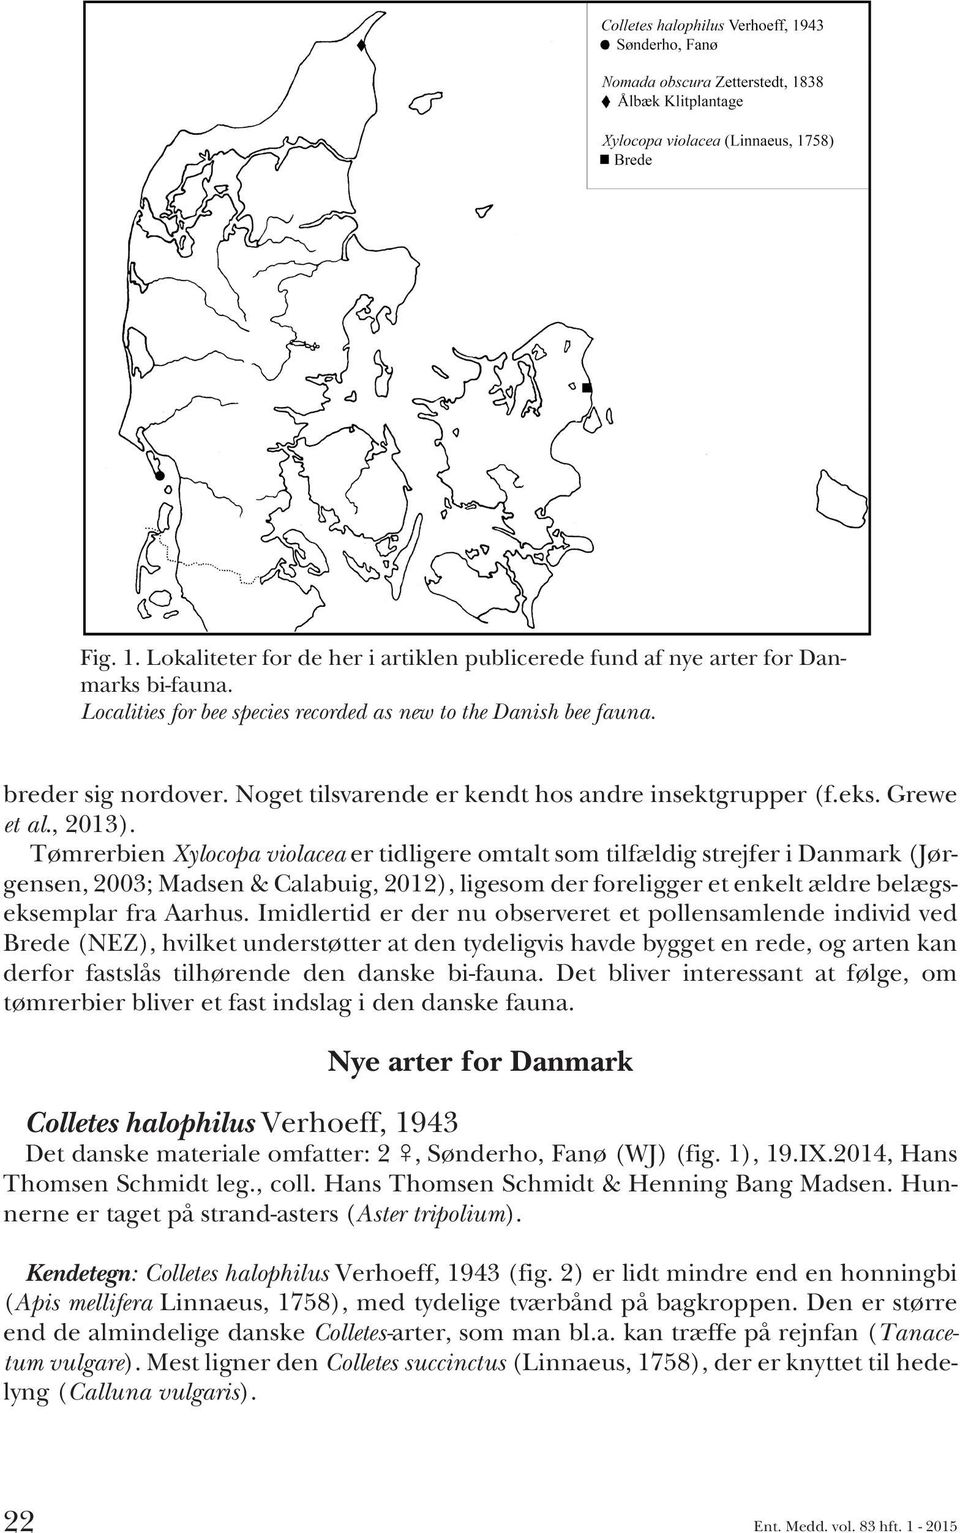 Tømrerbien Xylocopa violacea ertidligereomtaltsomtilfældigstrejferidanmark (Jørgensen, 2003; Madsen & Calabuig, 2012), ligesom der foreligger et enkelt ældre belægseksemplar fra Aarhus.